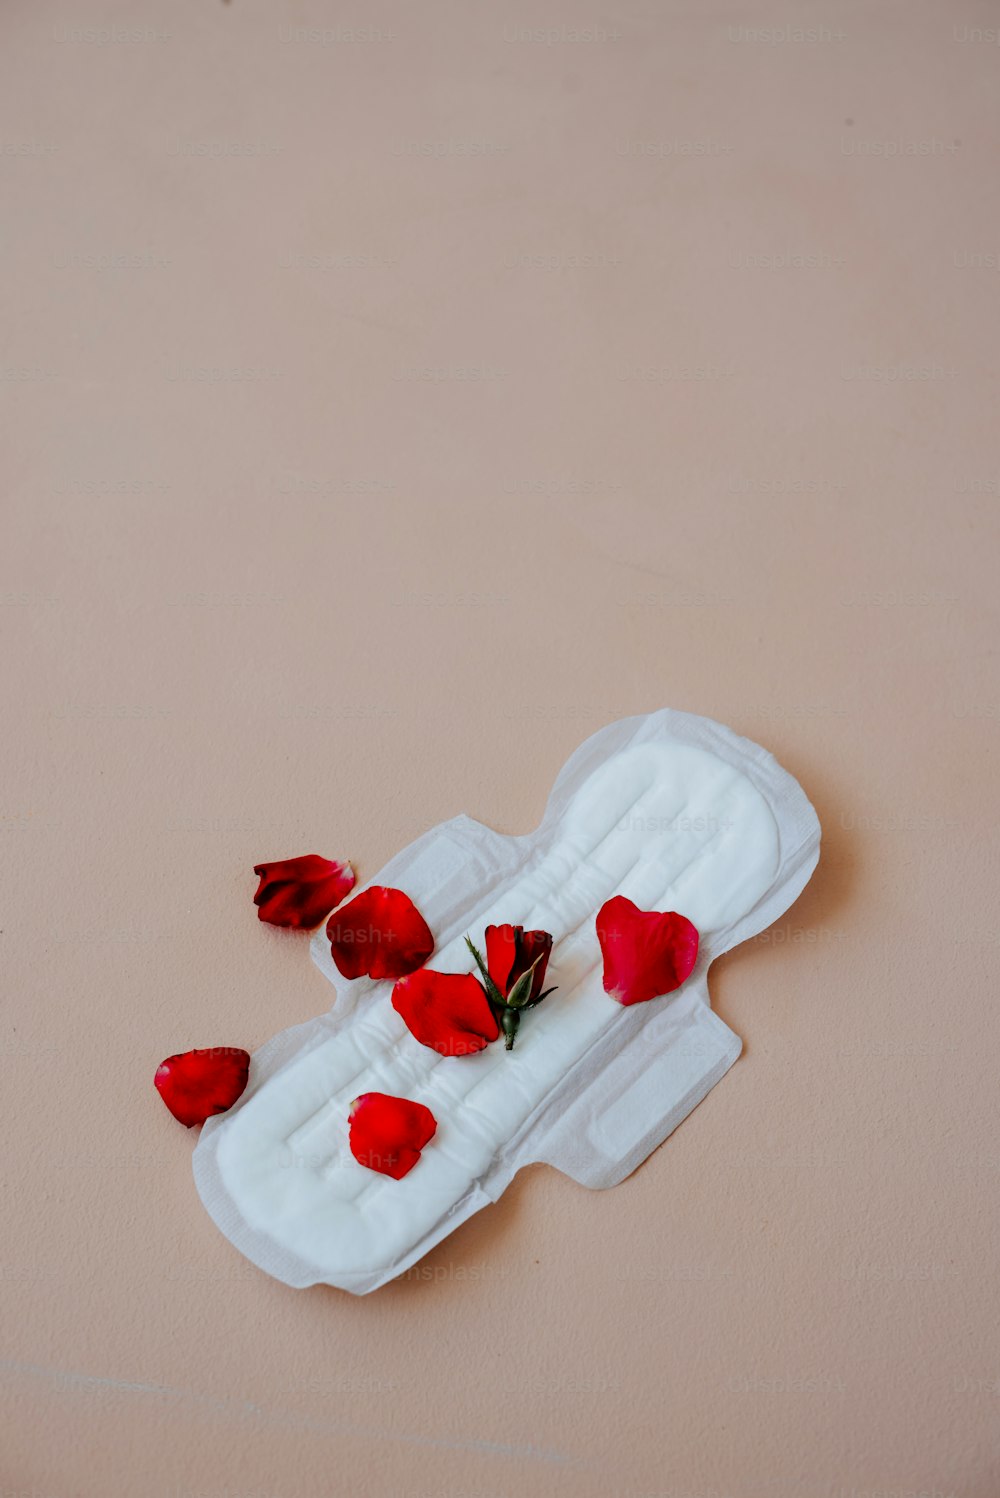 um objeto branco com flores vermelhas sobre ele